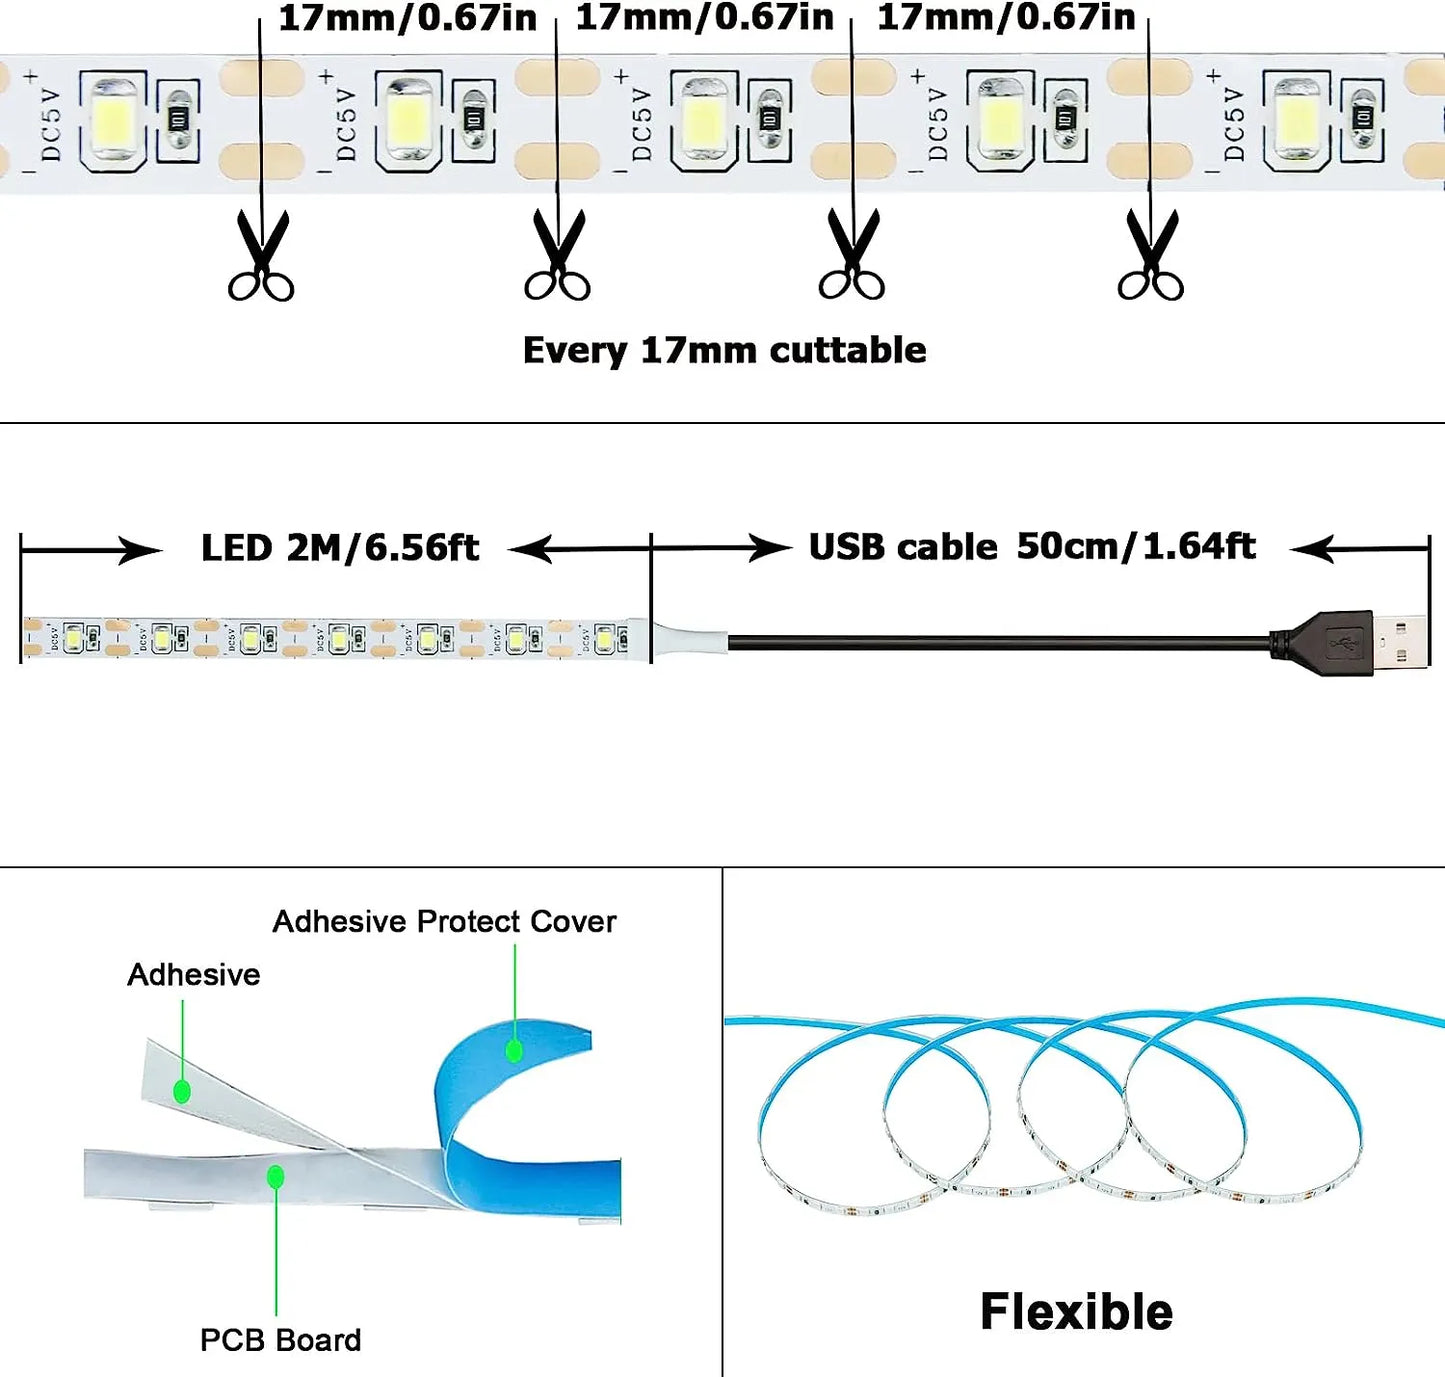 DC 5V USB LED Home Decor Lamp 1- 5m LED String Light